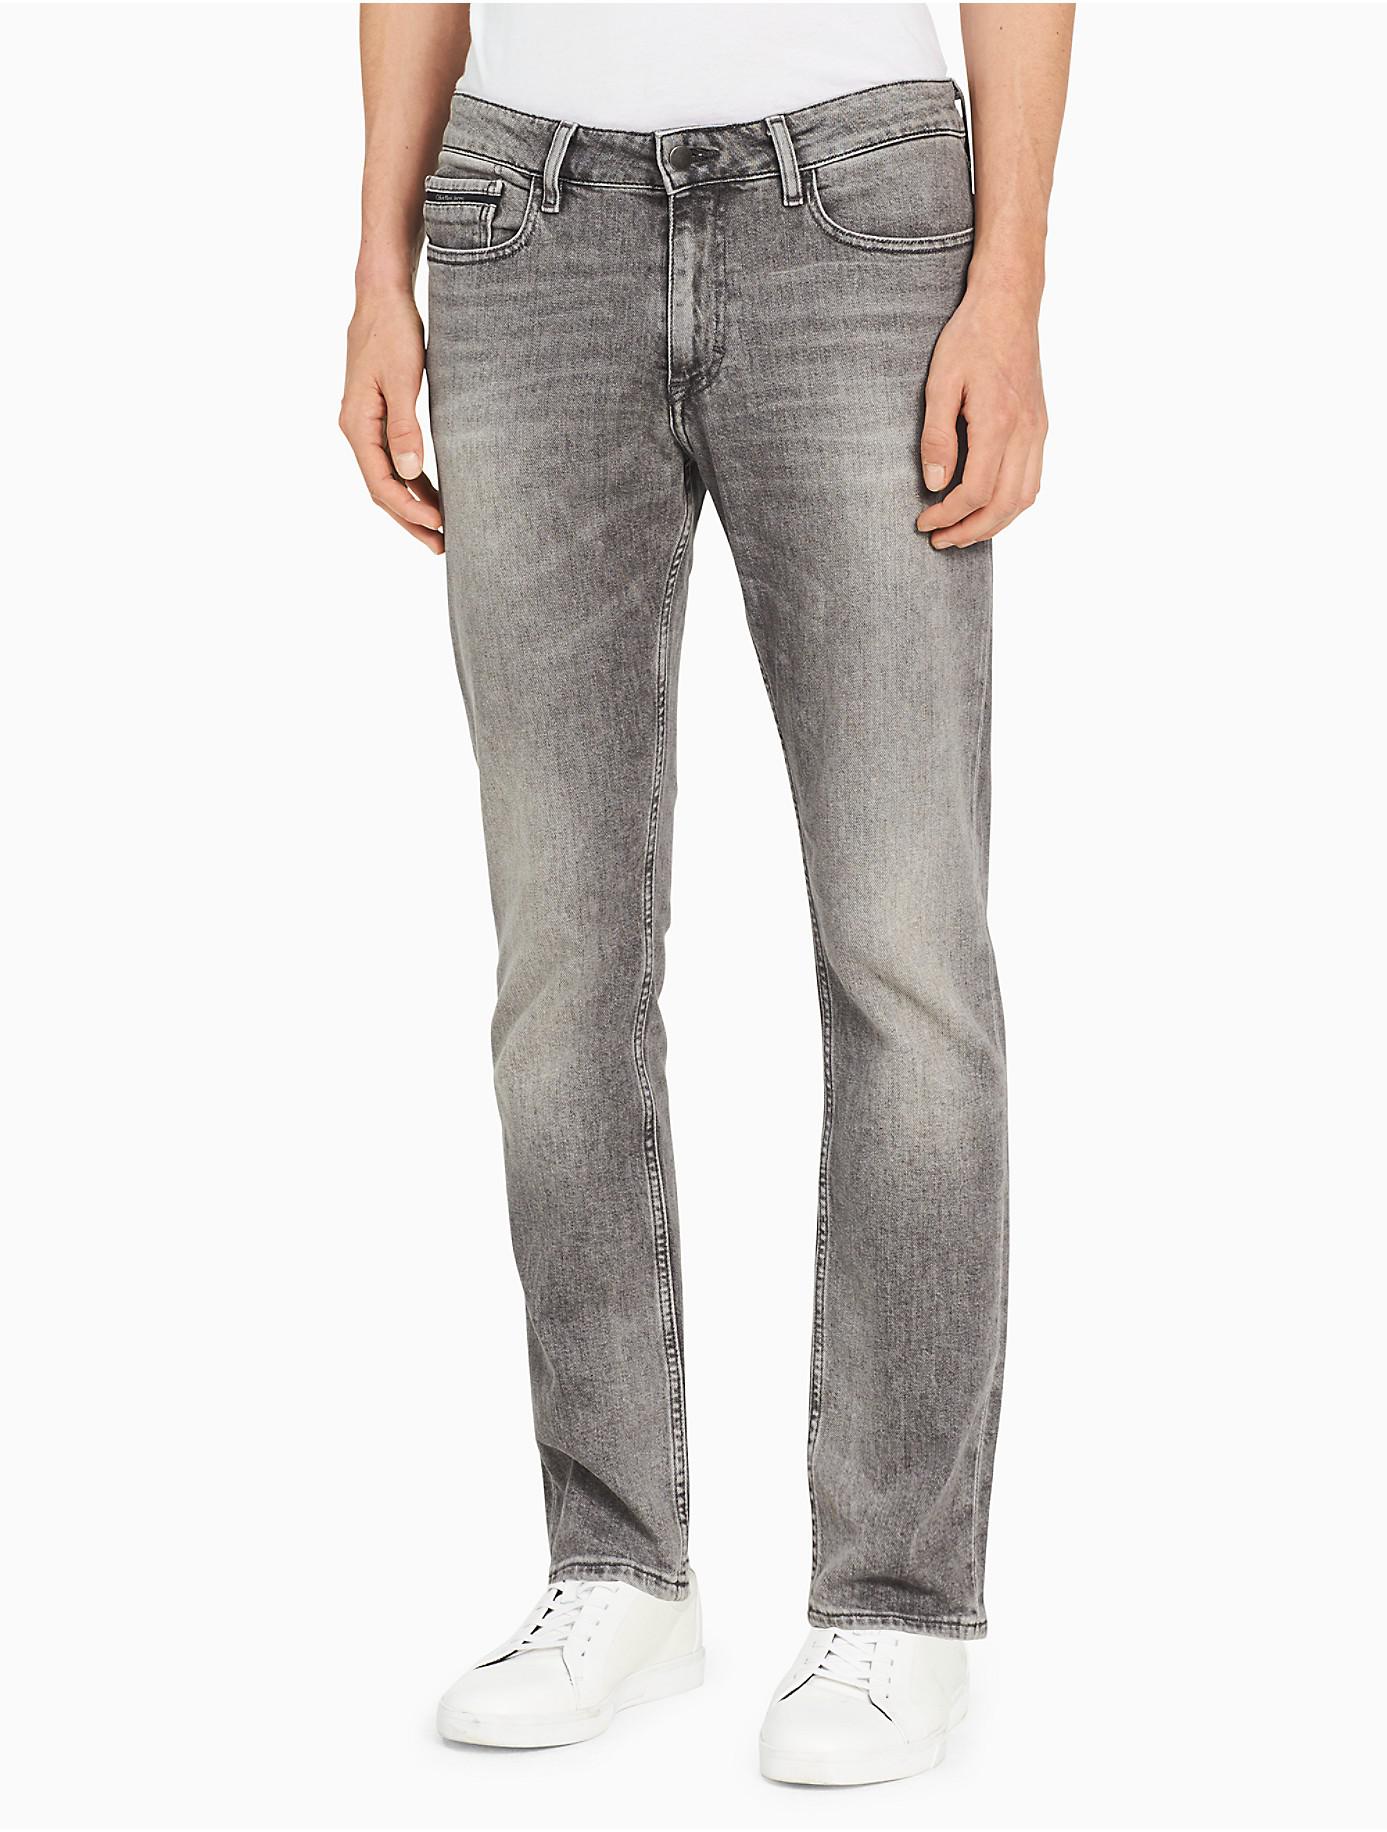 Introducir 30+ imagen calvin klein gray jeans